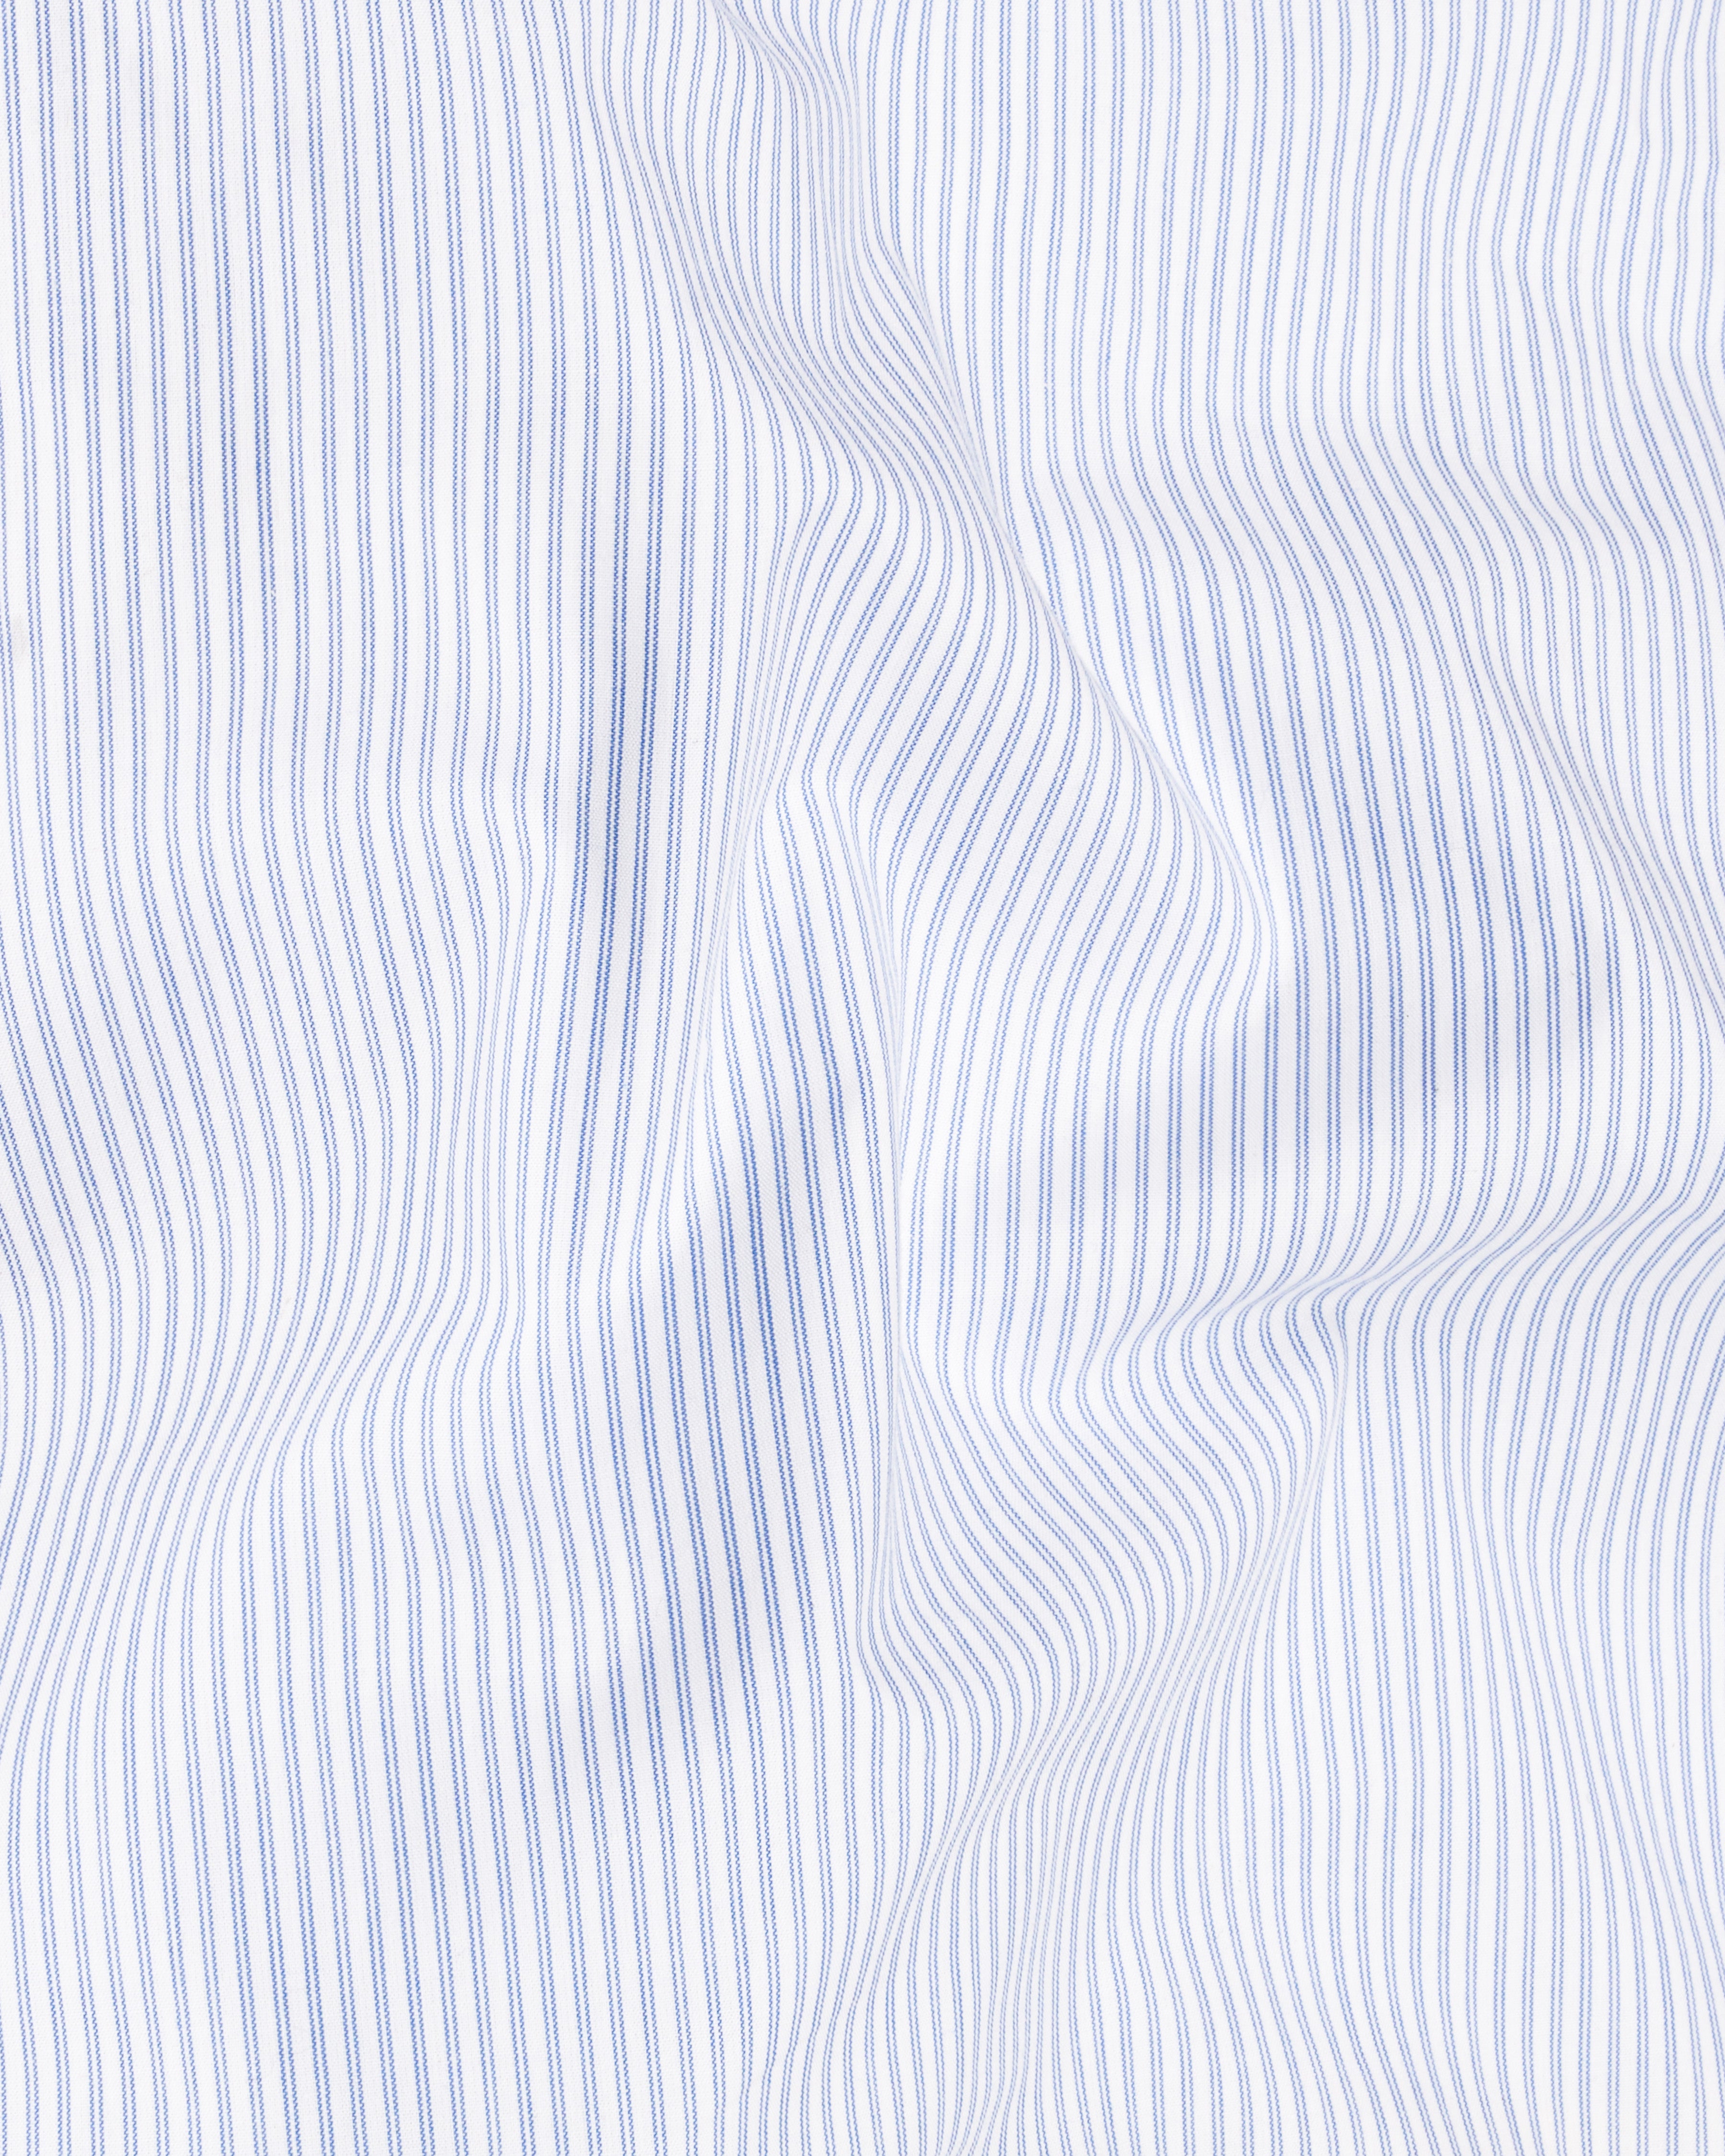 Glacier Blue with Bright White Pin Striped Premium Cotton Lounge Pants LP195-28, LP195-30, LP195-32, LP195-34, LP195-36, LP195-38, LP195-40, LP195-42, LP195-44